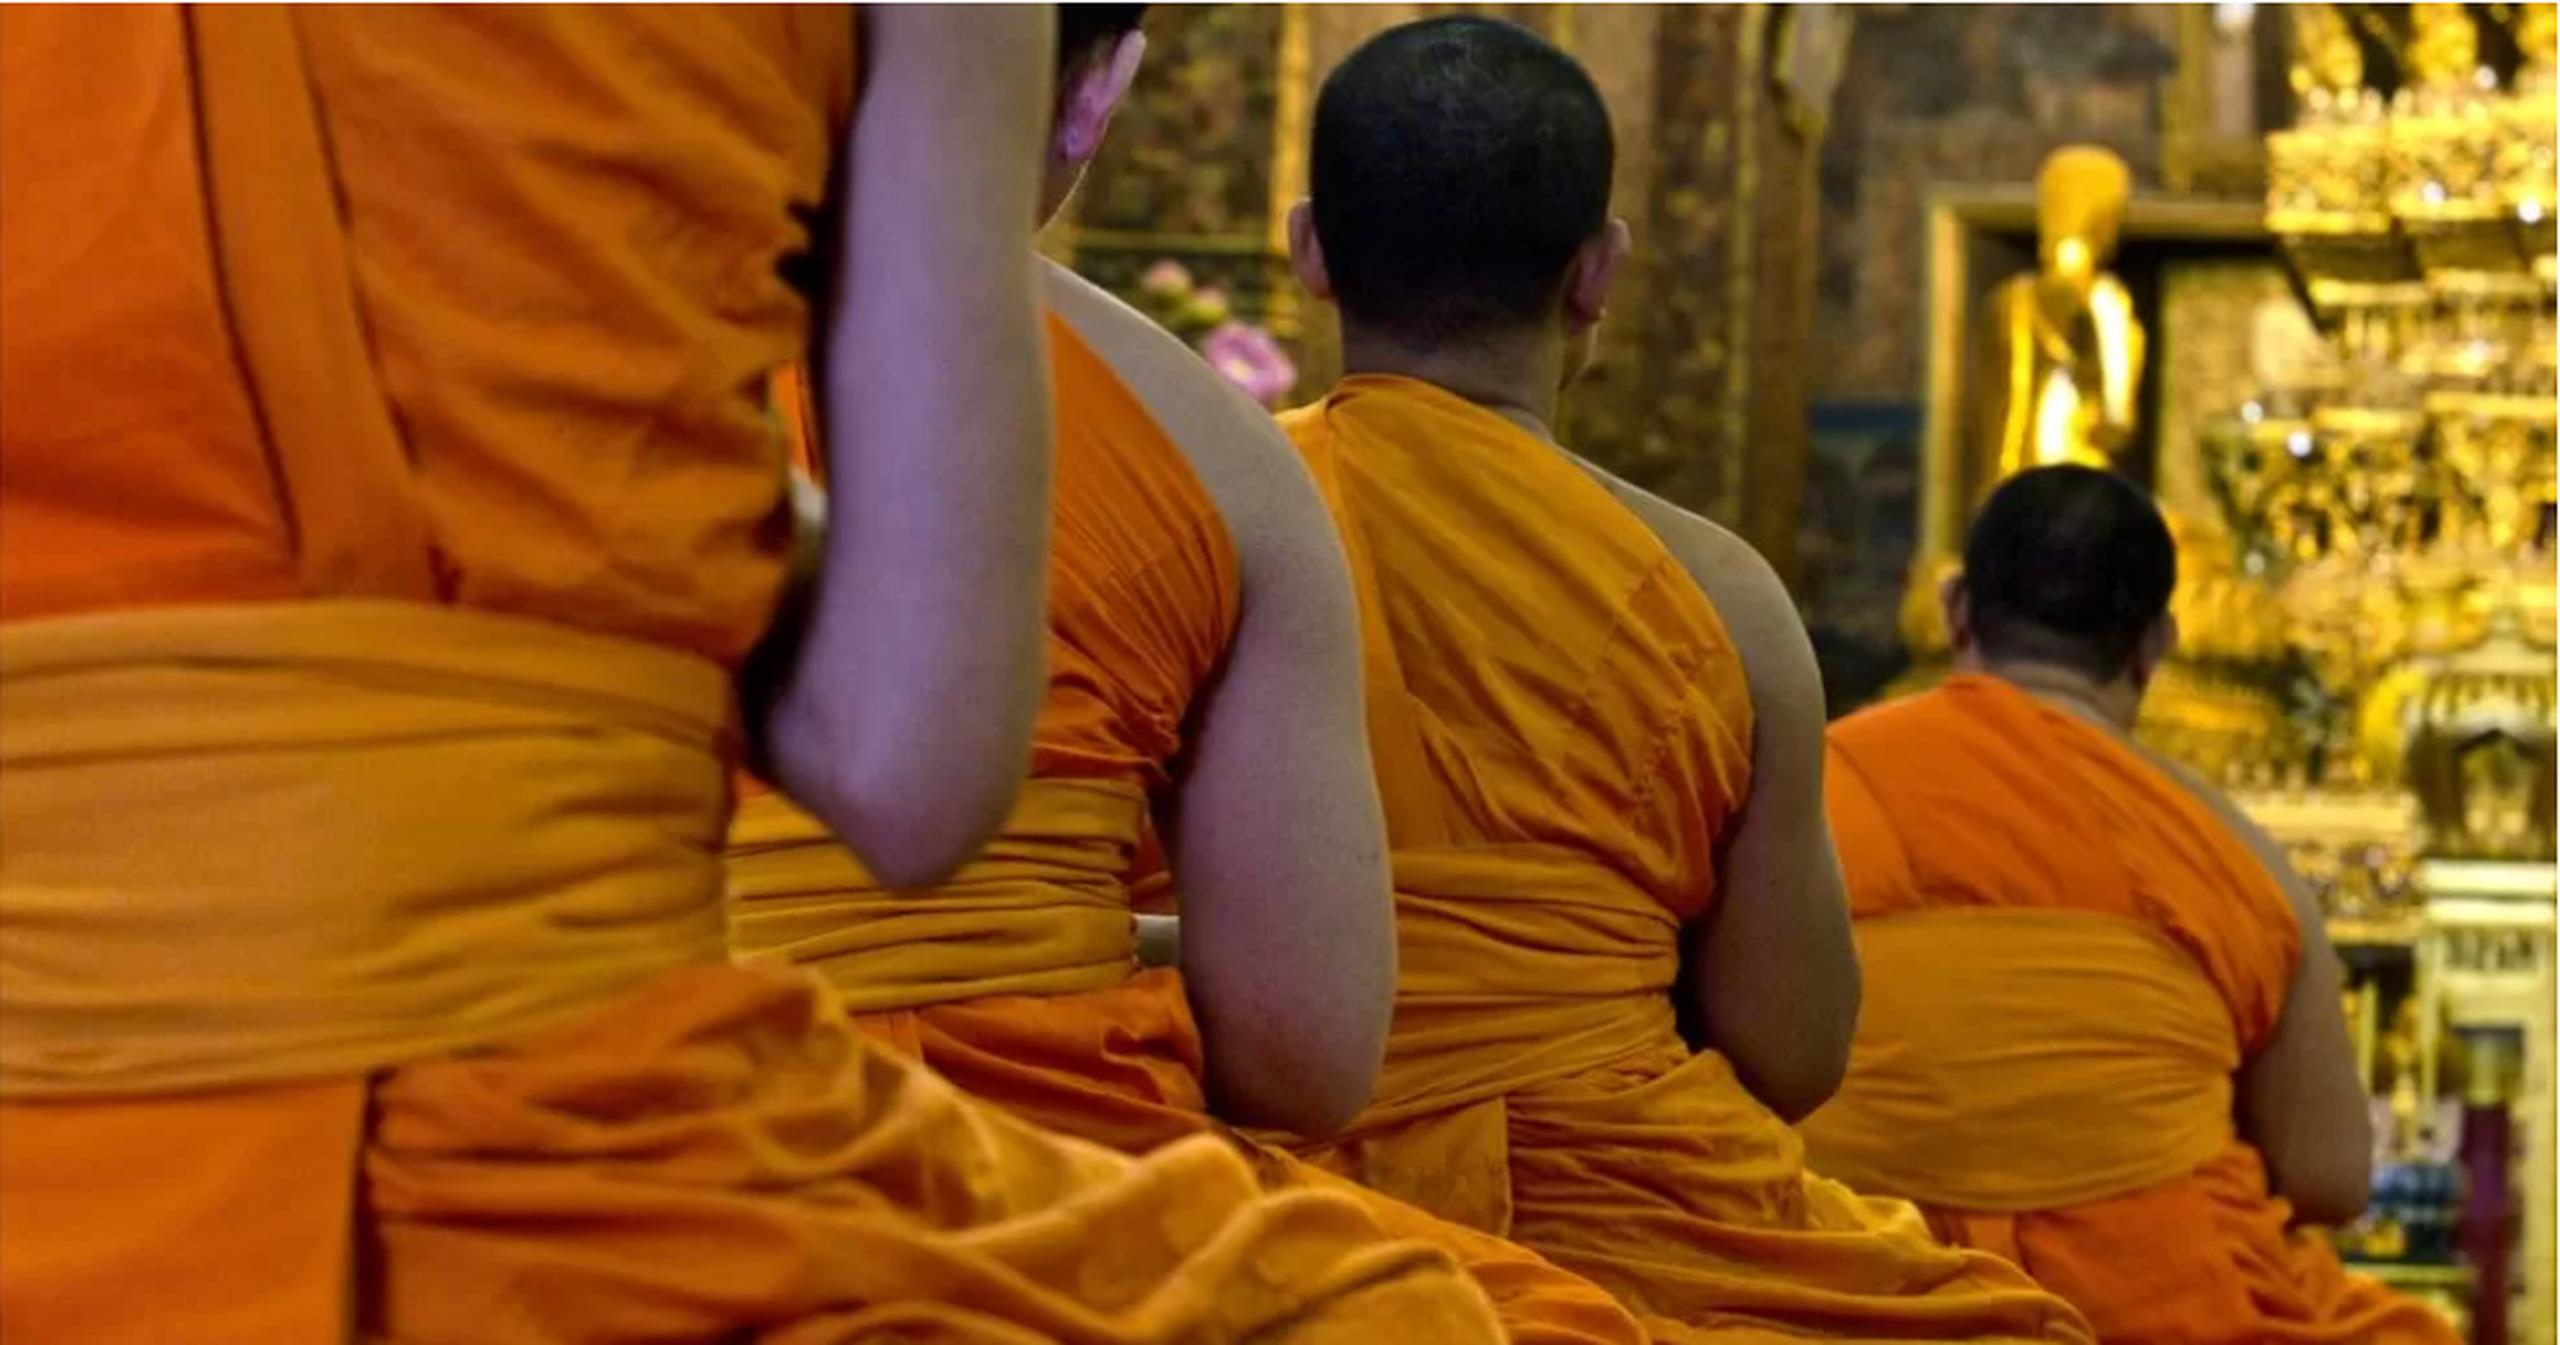 Los cuatro monjes, incluyendo el abad, fueron enviados a una clínica de salud para someterse a un proceso de rehabilitación de drogas.